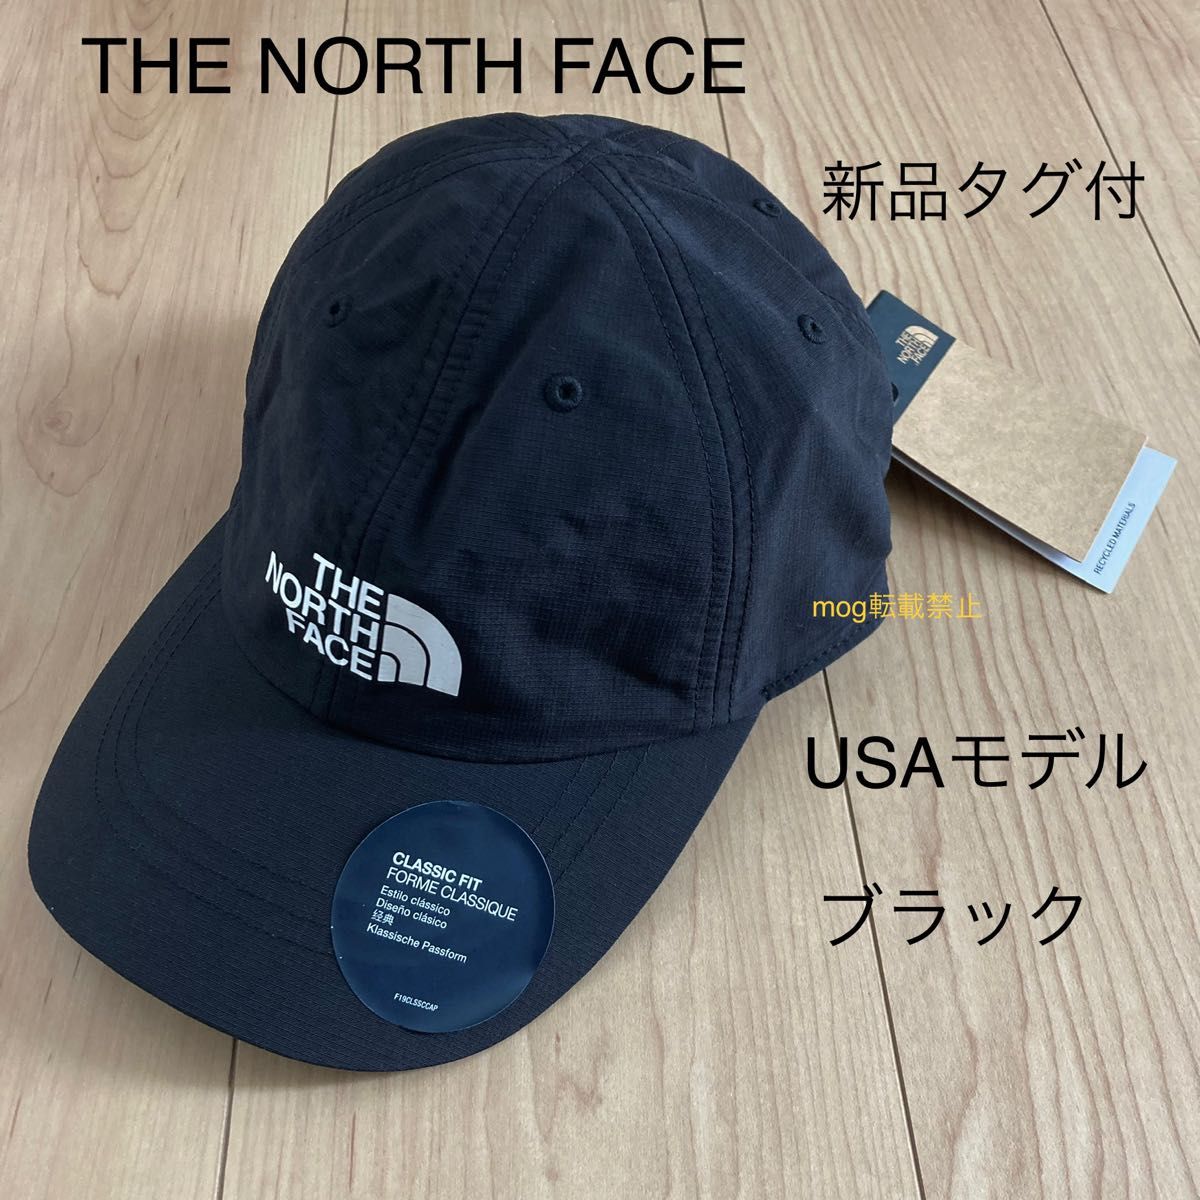 THE NORTH FACE 新品タグ付 ノースフェイス USAモデル【ブラック